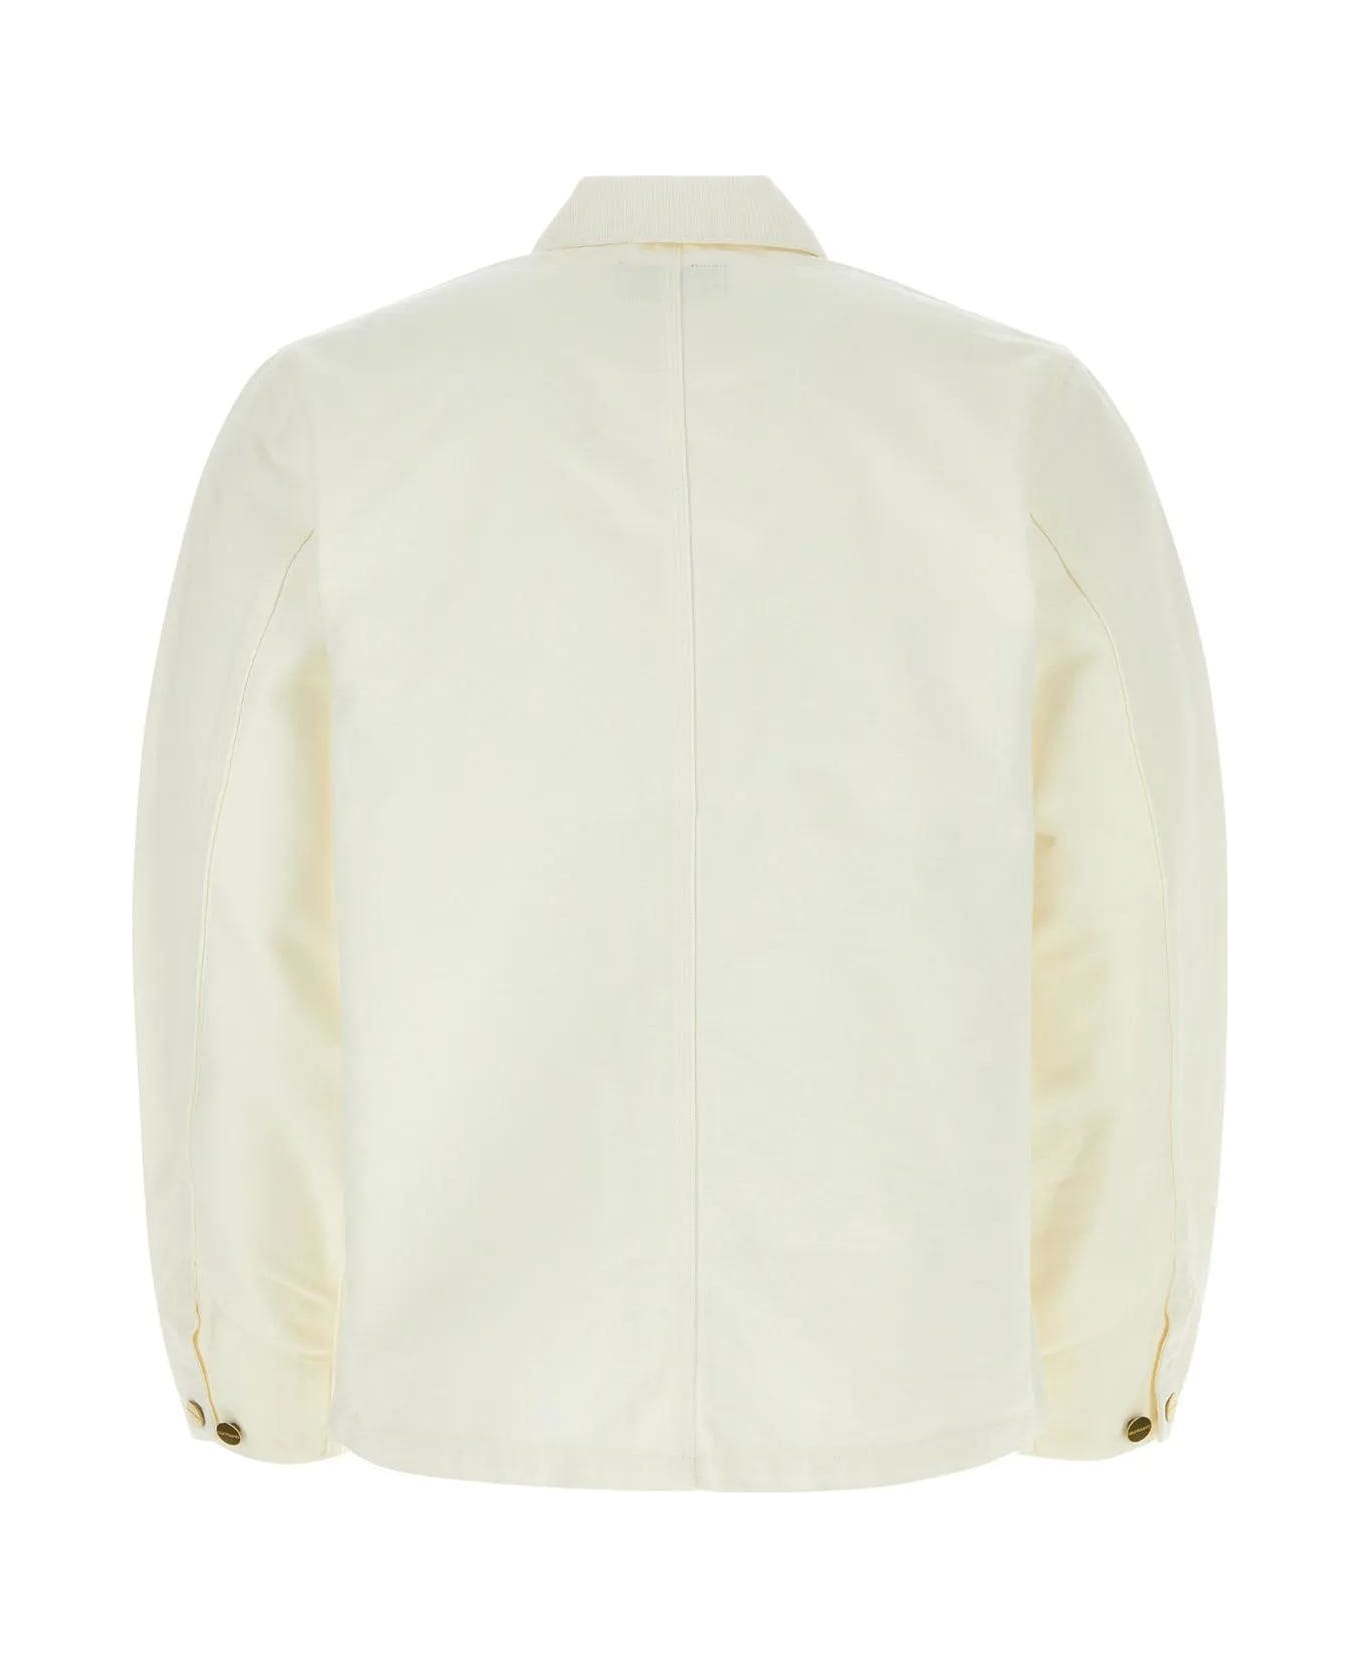 Carhartt WIP White Cotton Detroit Jacket - White